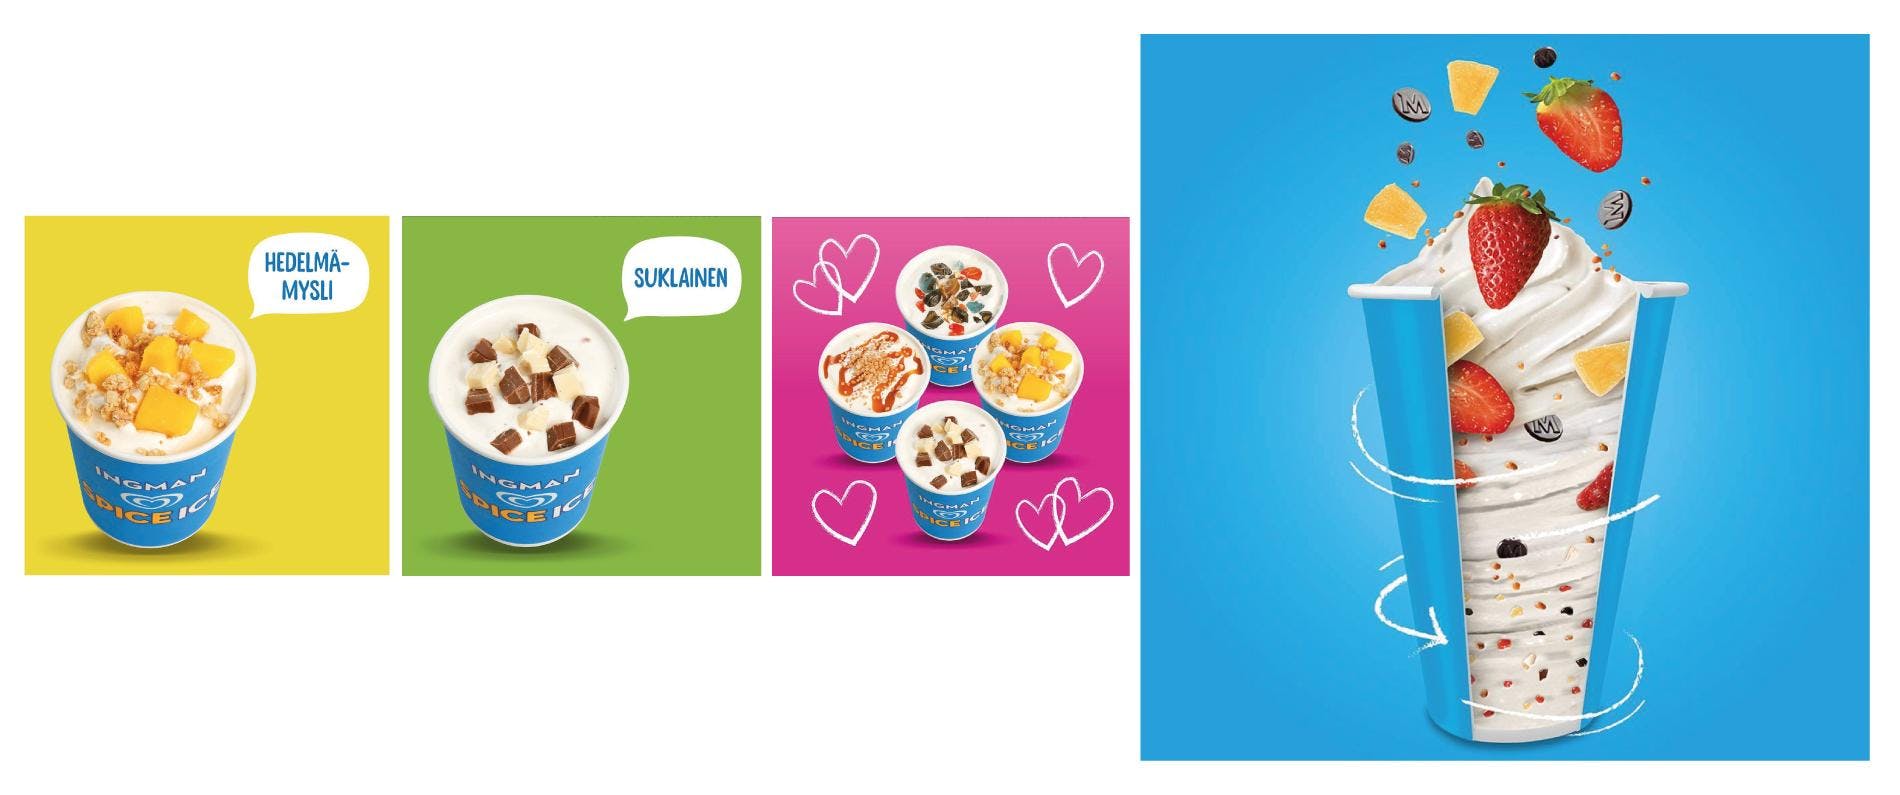 Mainoskuvia eri jäätelöannoksista.